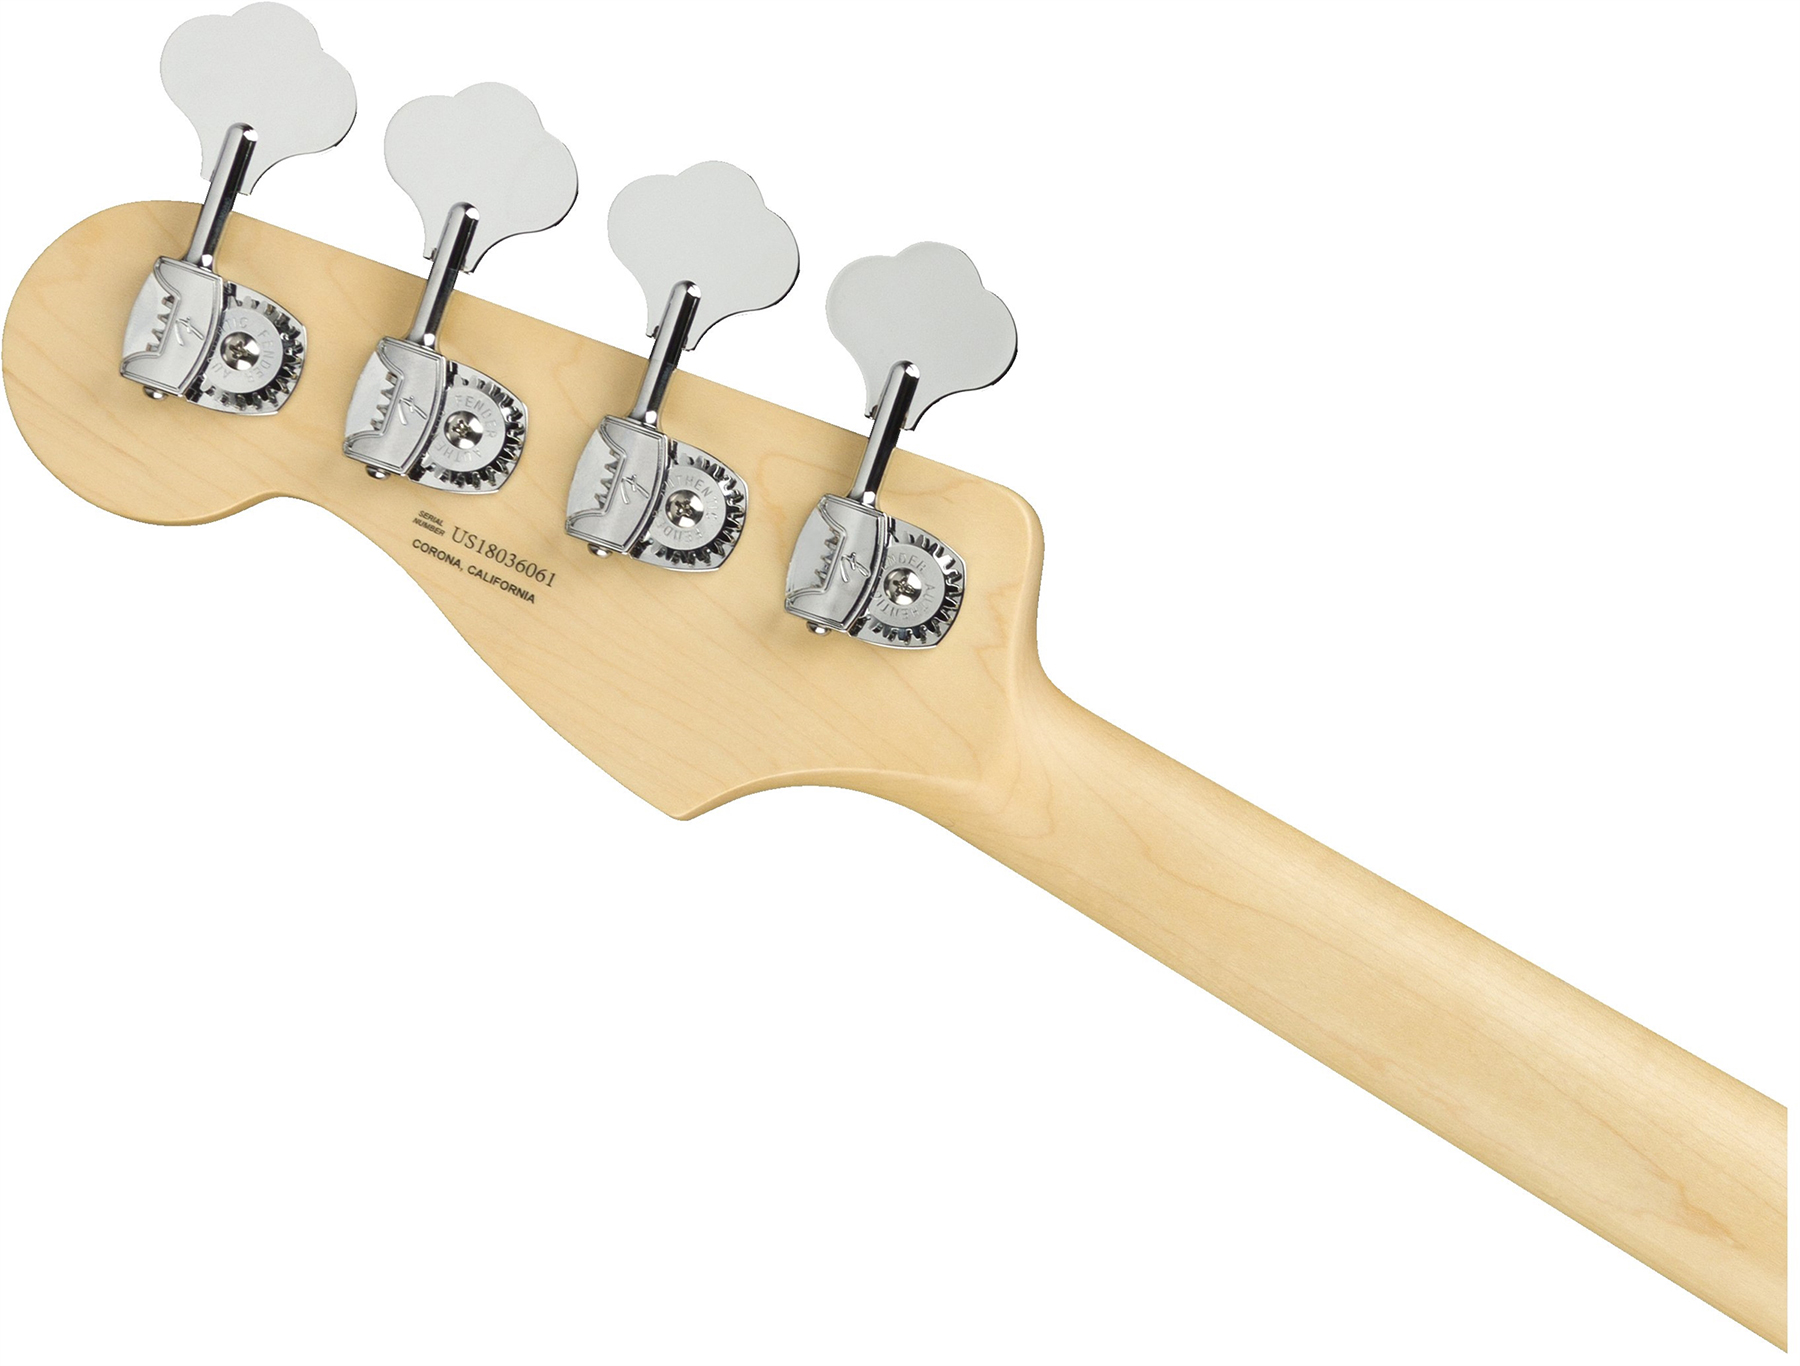 Fender Jazz Bass American Performer Usa Rw - 3-color Sunburst - Bajo eléctrico de cuerpo sólido - Variation 3